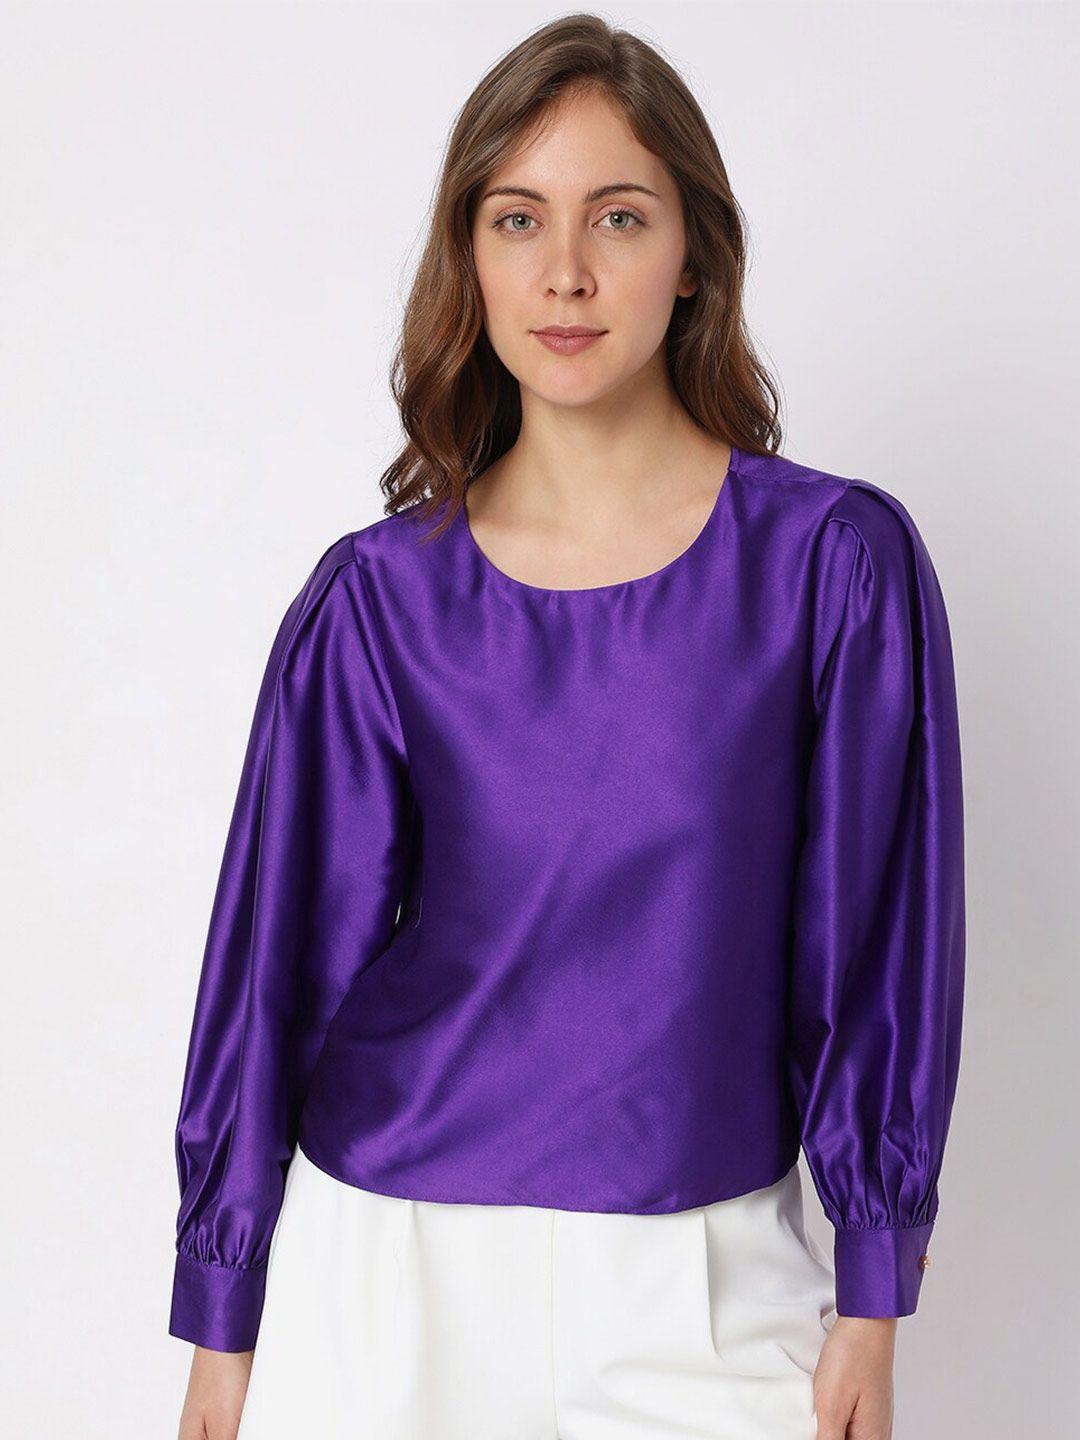 vero moda purple top